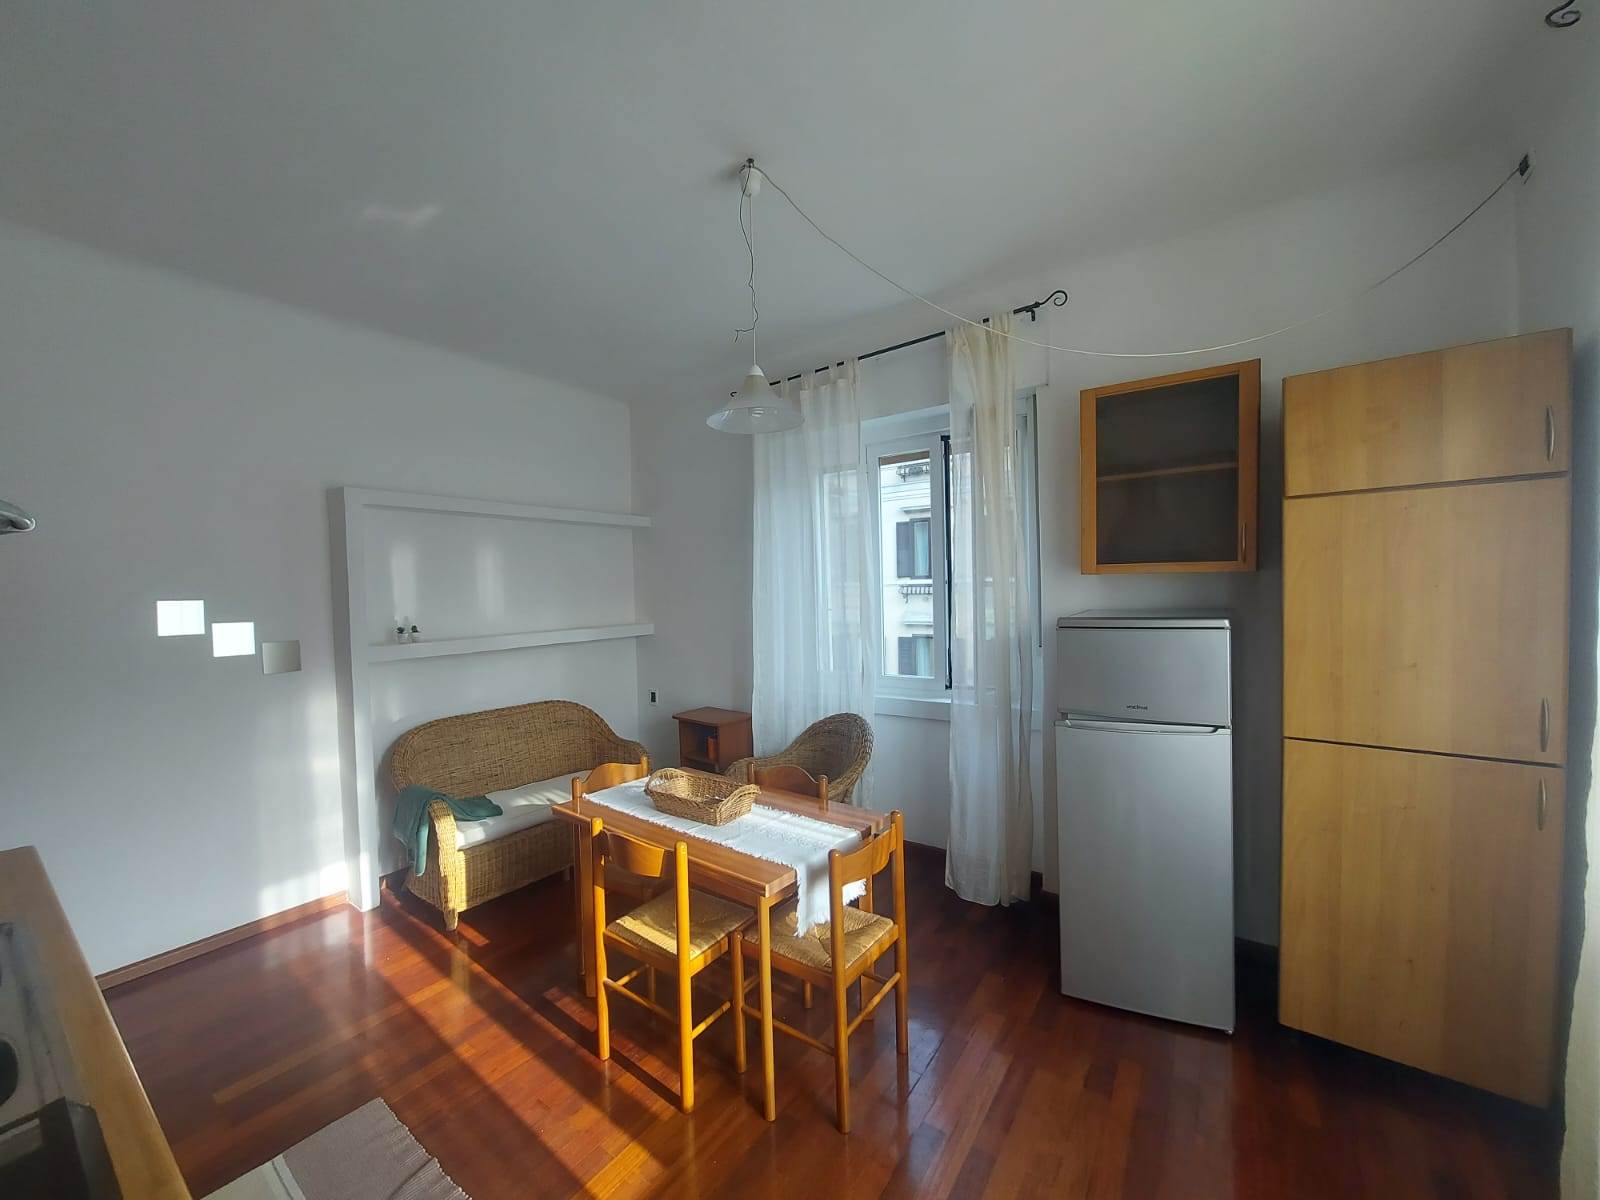 Appartamento in vendita a Trieste, 2 locali, zona Località: ROIANO, prezzo € 95.000 | PortaleAgenzieImmobiliari.it